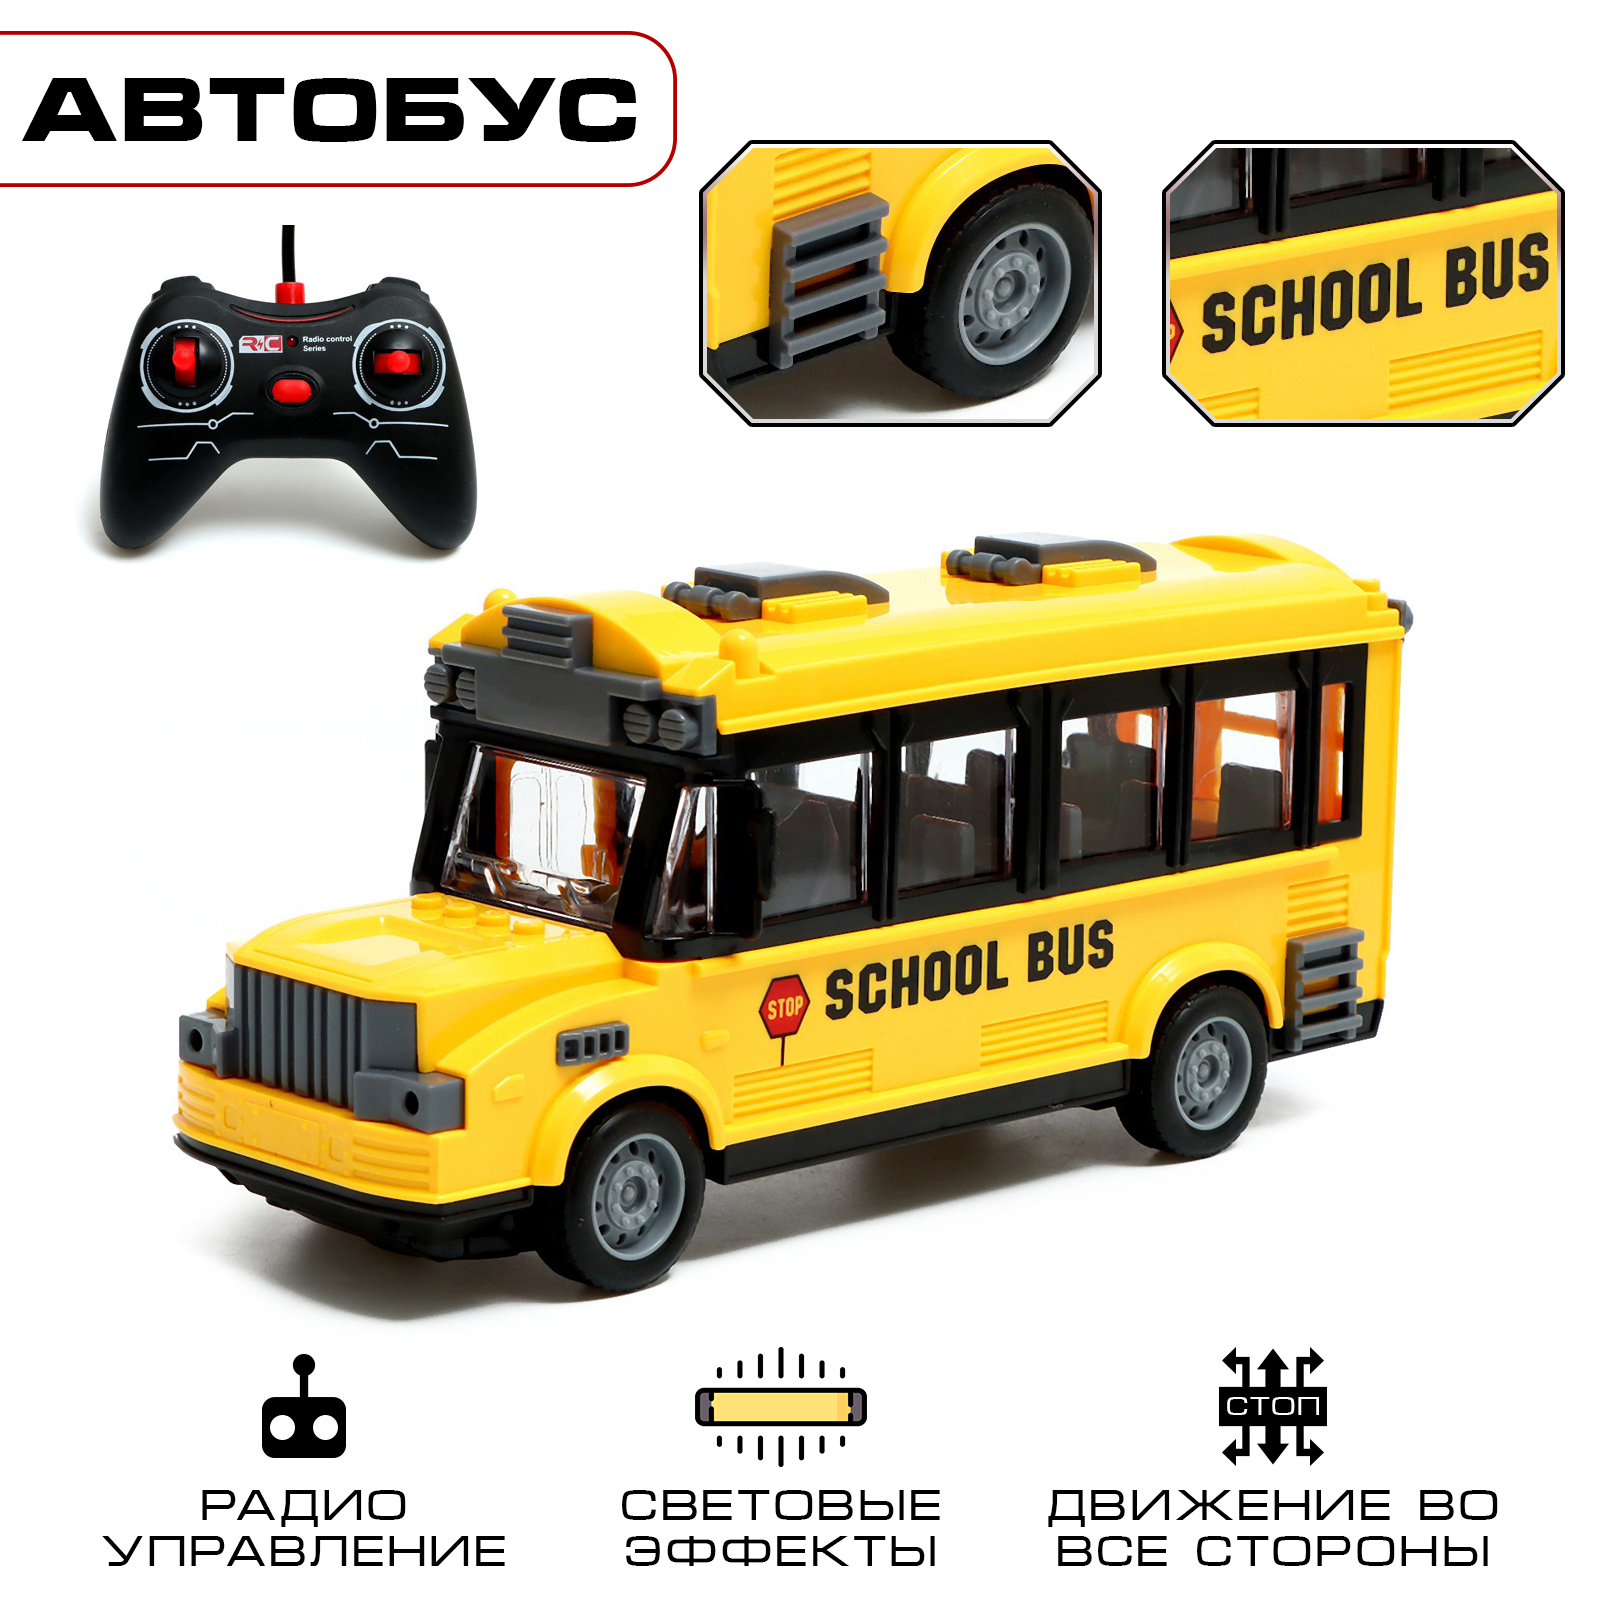 Автобус радиоуправляемый Школьный, свет, работает от батареек